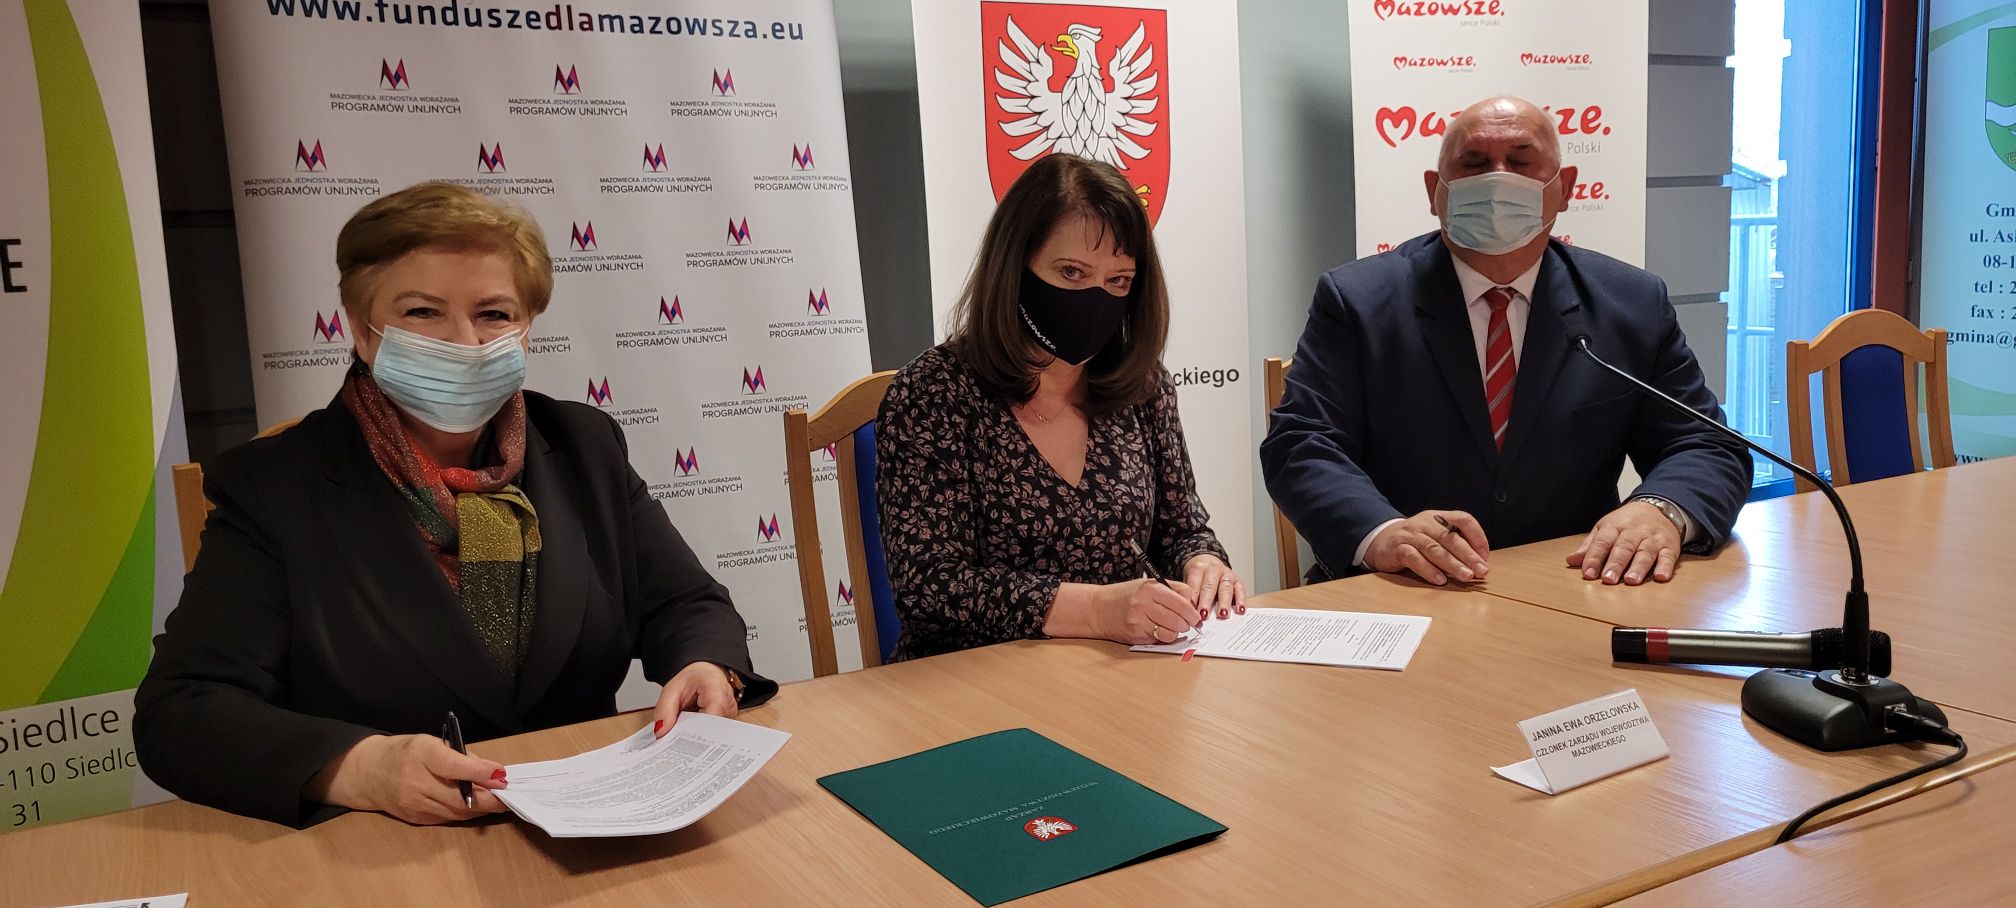 Uroczyste podpisanie umowy na dofinansowanie remontu zabytkowego Dworu w Ostrówku